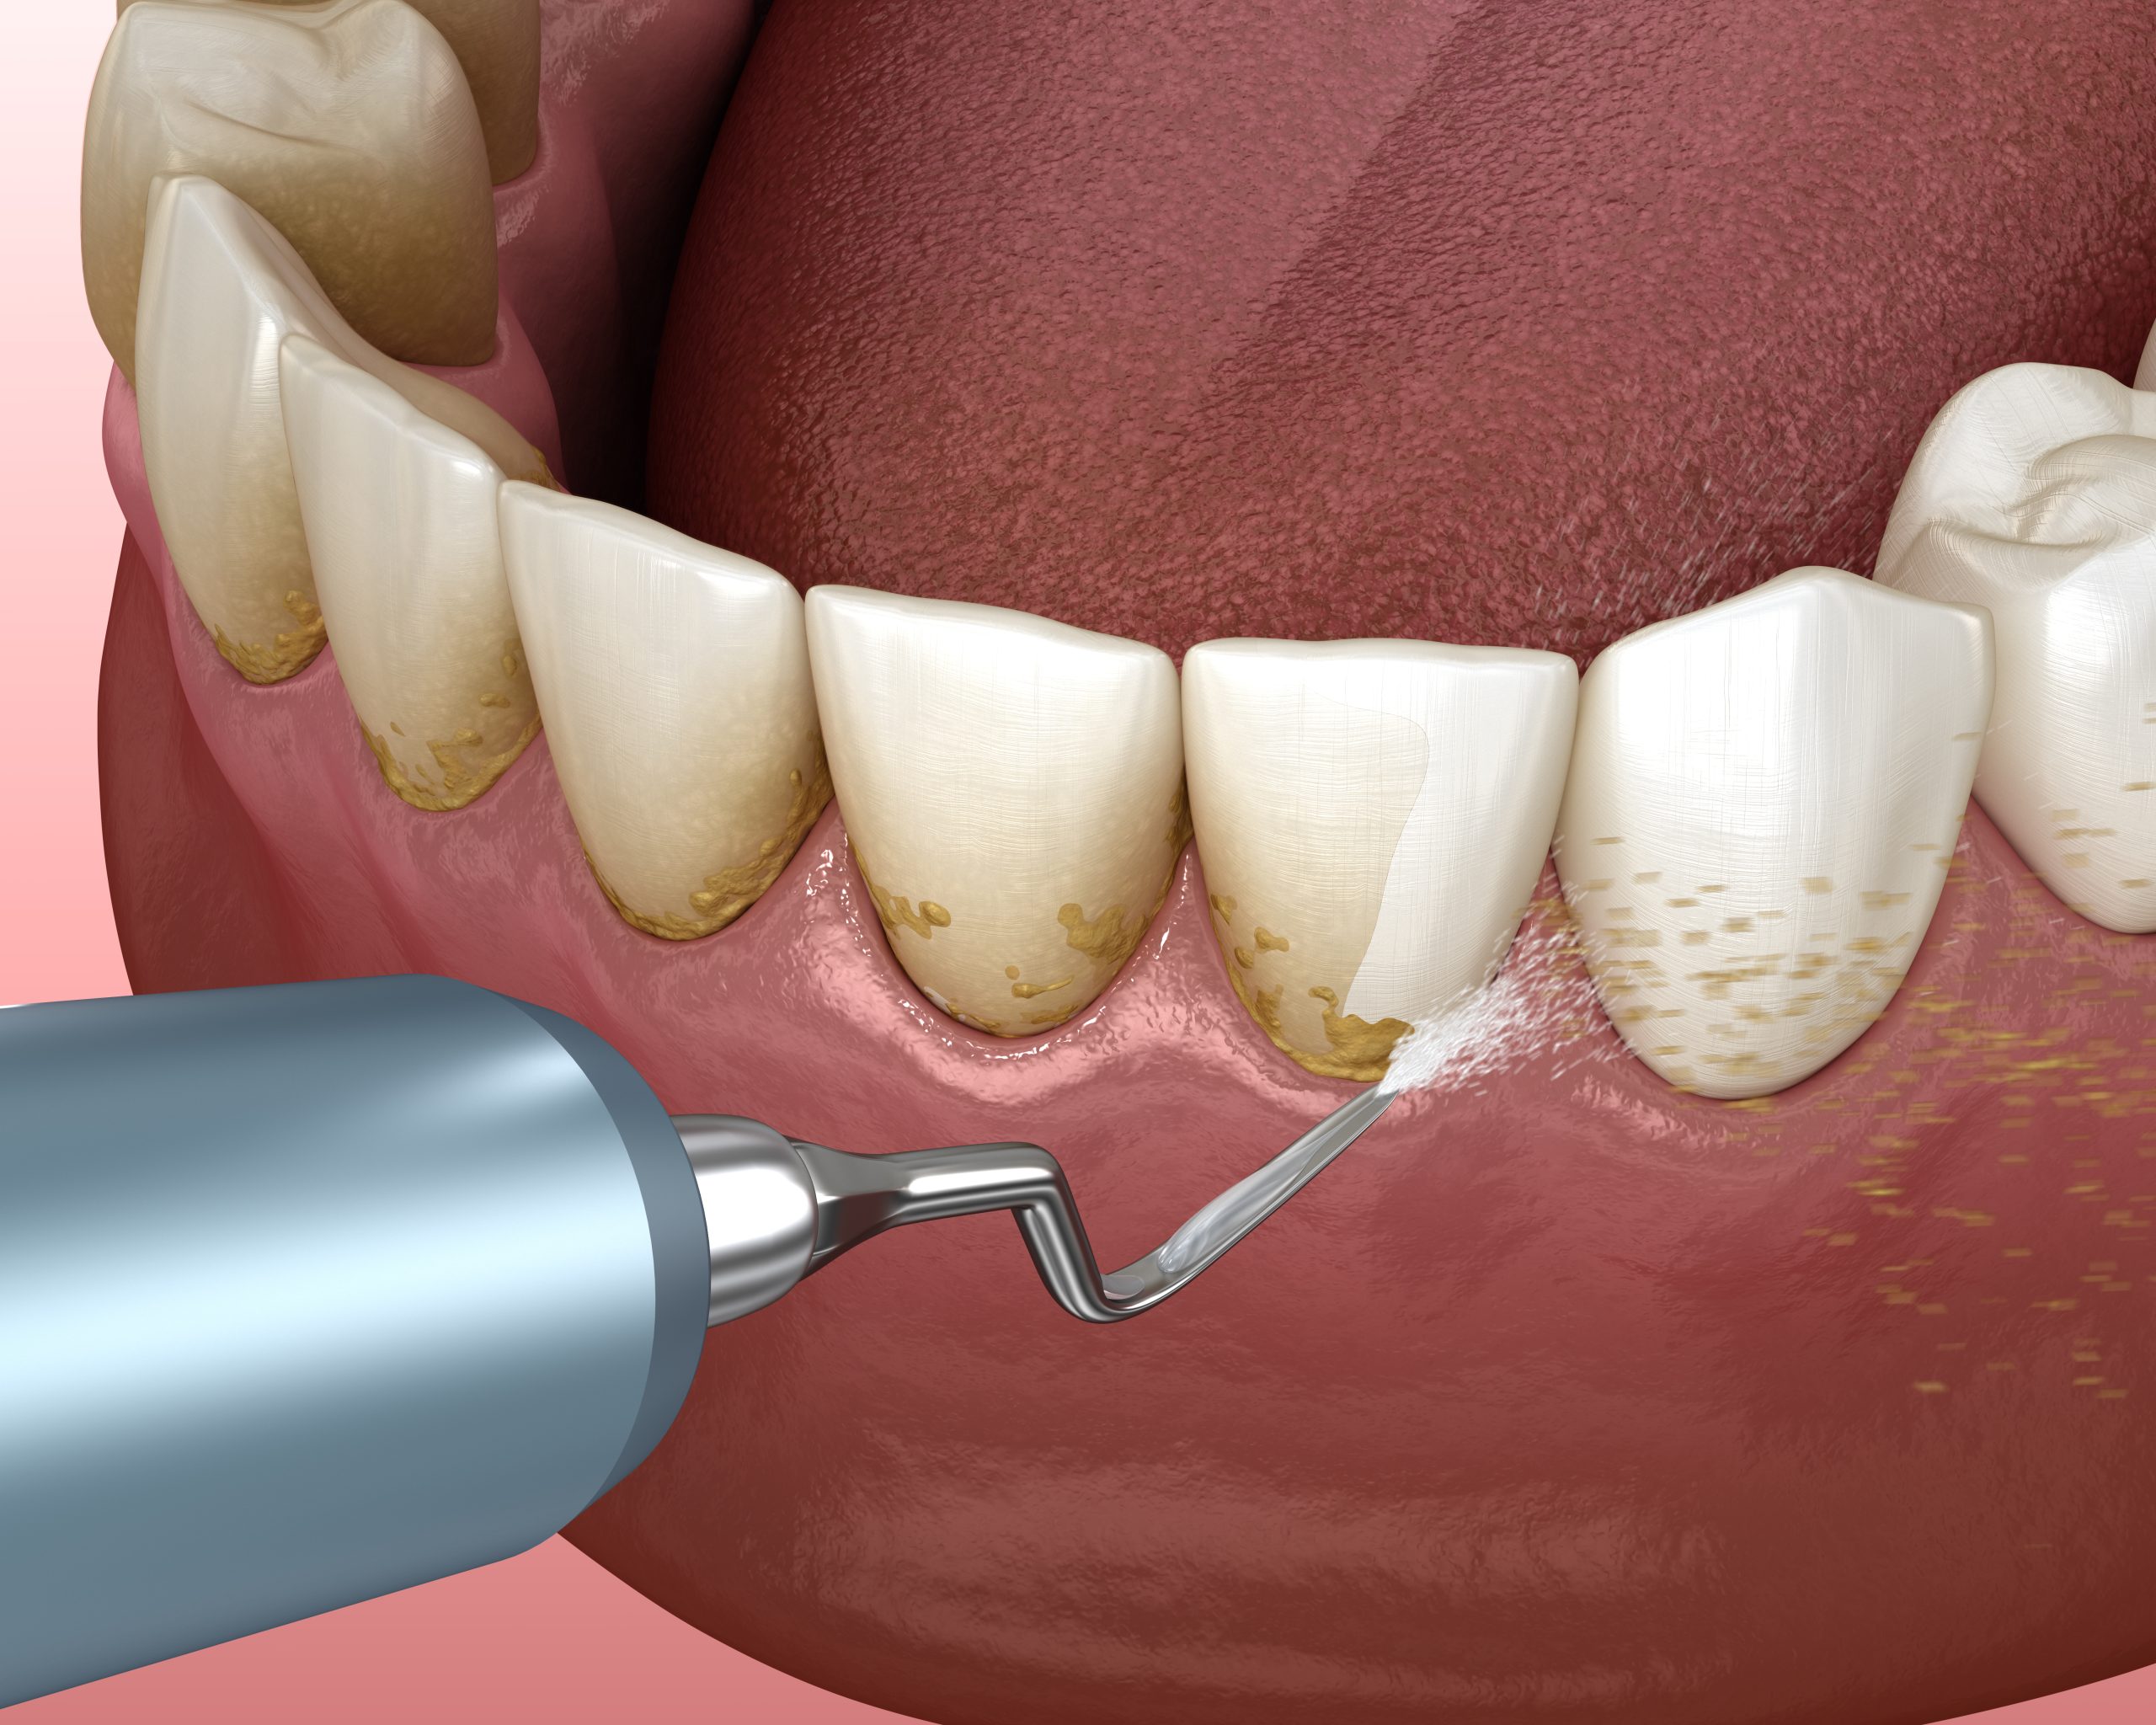 جرمگیری دندان و لثه و حذف پلاک های دندانی بین دندان و لثه